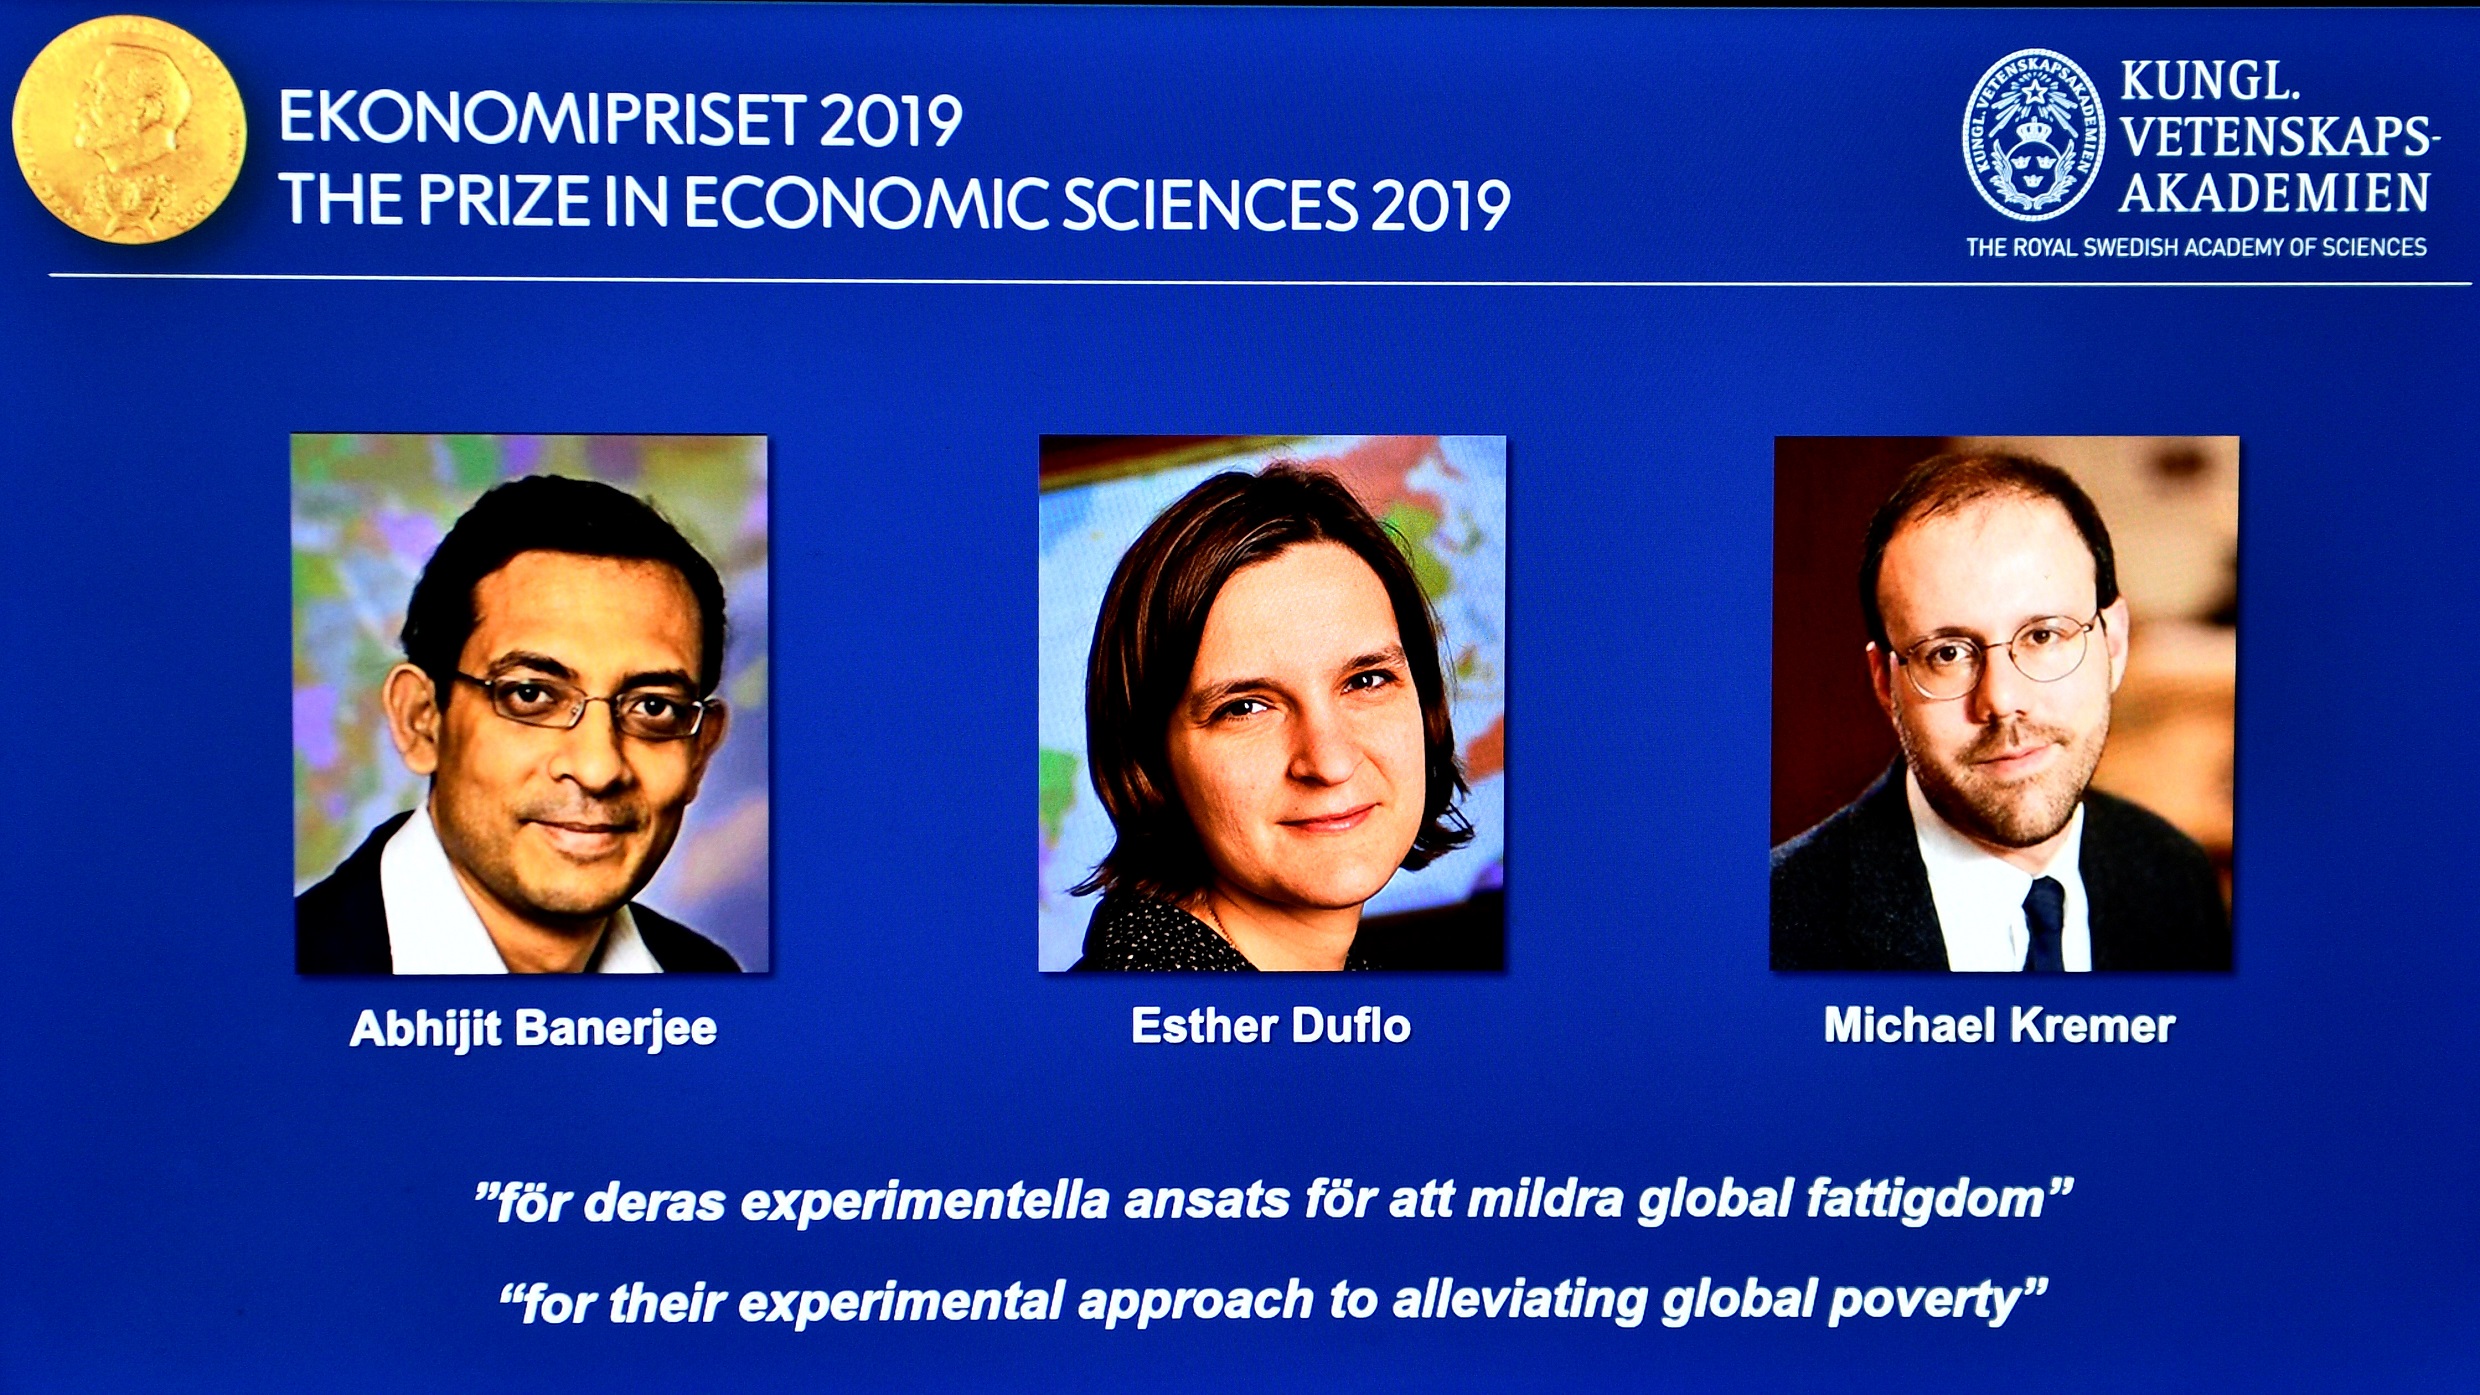 الفائزون بجائزة نوبل للاقتصاد الأميركي أبهجيت بانيرجي المولود في الهند، والفرنسية الأميركية إستر دوفلو، والأميركي مايكل كريمر. (رويترز)